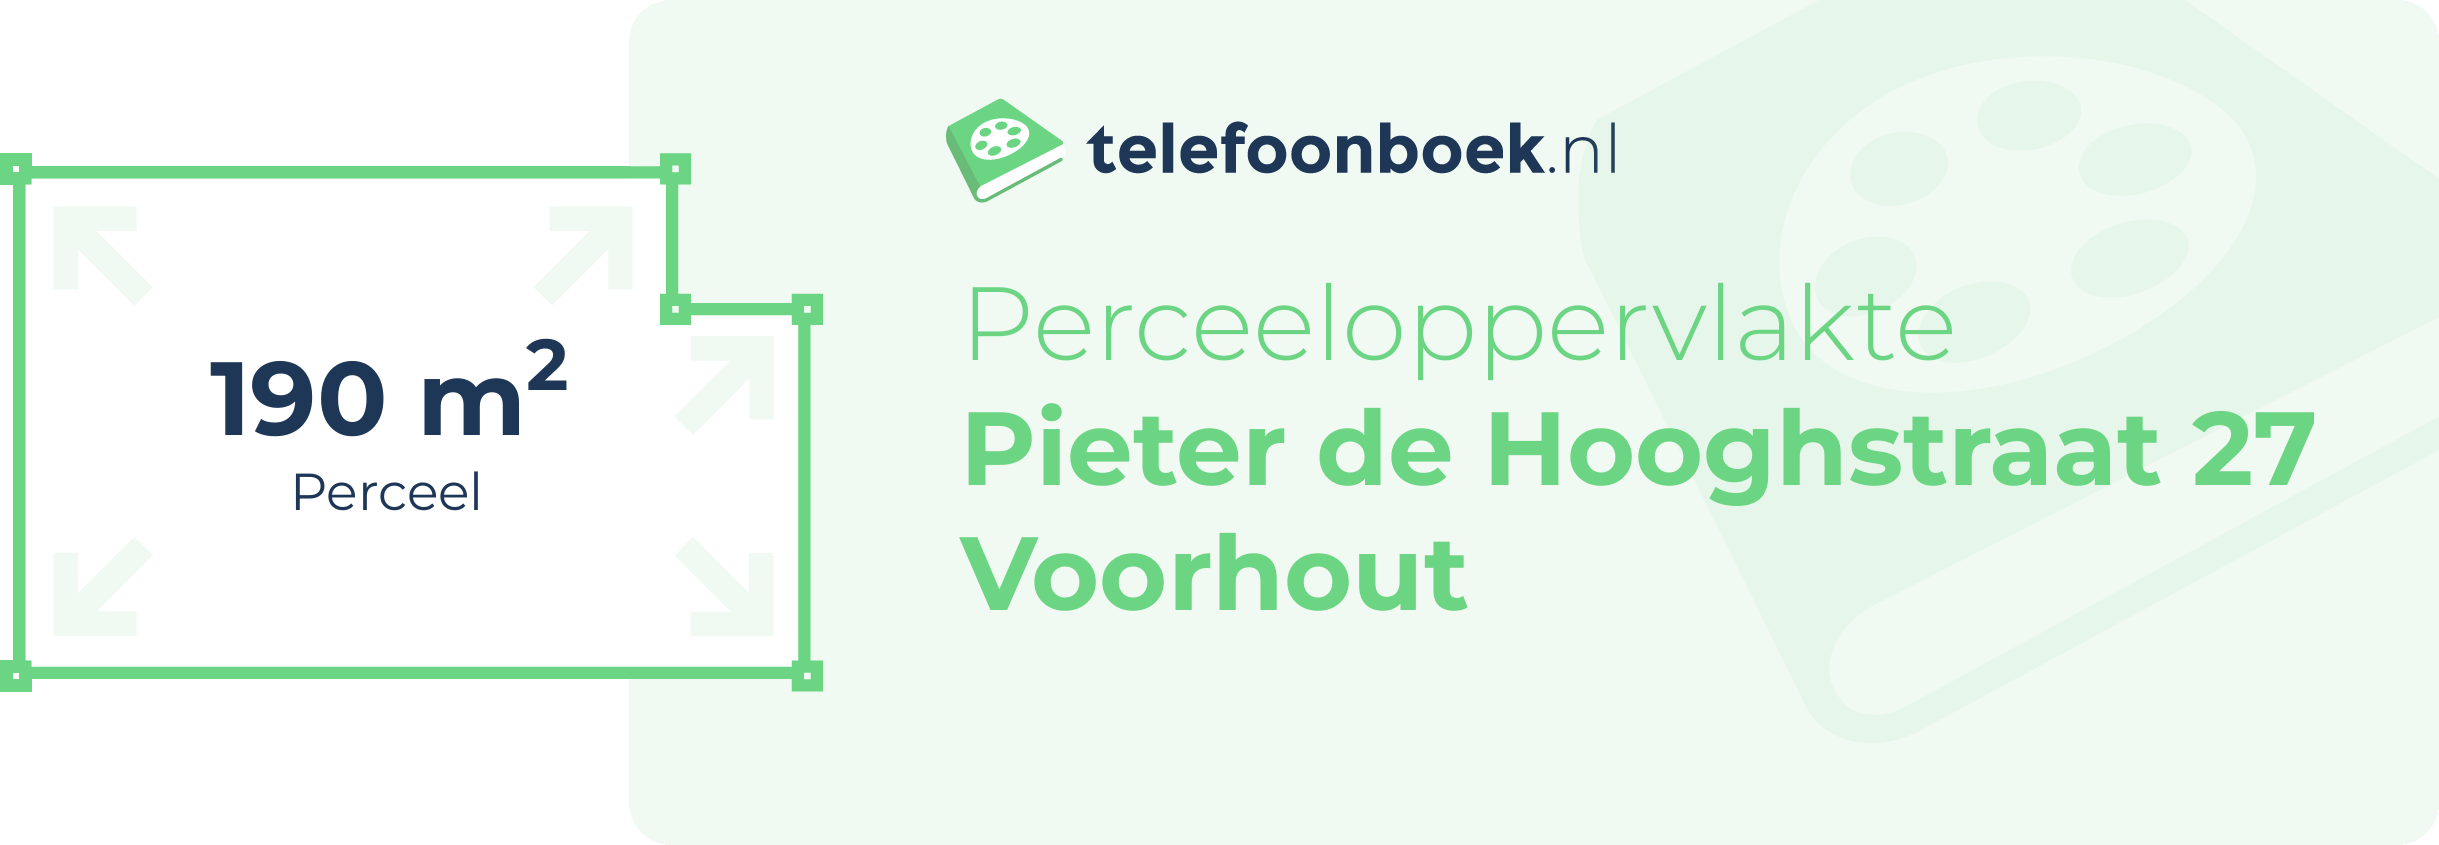 Perceeloppervlakte Pieter De Hooghstraat 27 Voorhout